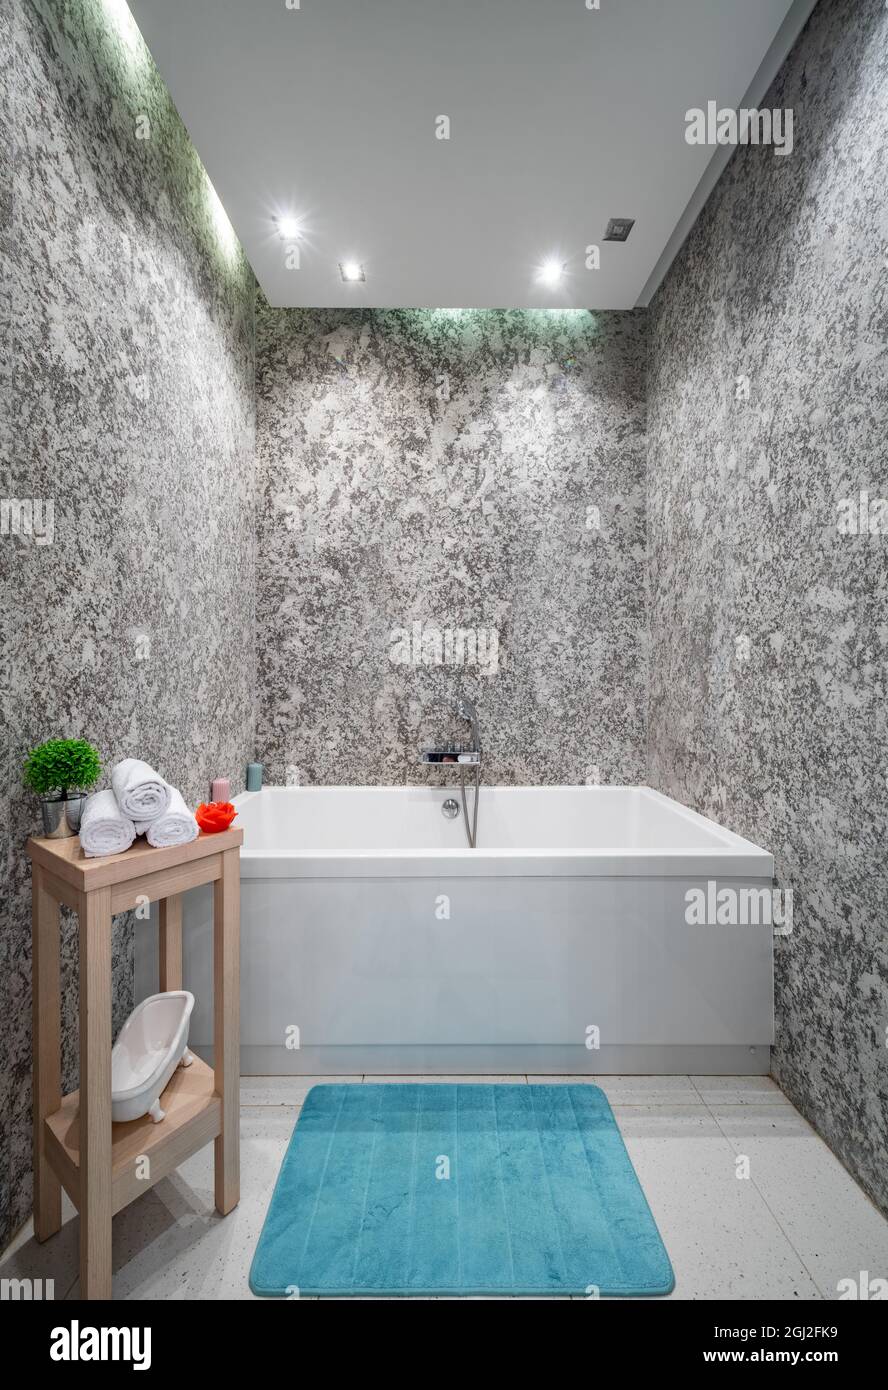 Moderno bagno interno in appartamento di lusso. Pareti in granito. Vasca da  bagno. Sgabello in legno con asciugamani bianchi. Tappeto turchese Foto  stock - Alamy